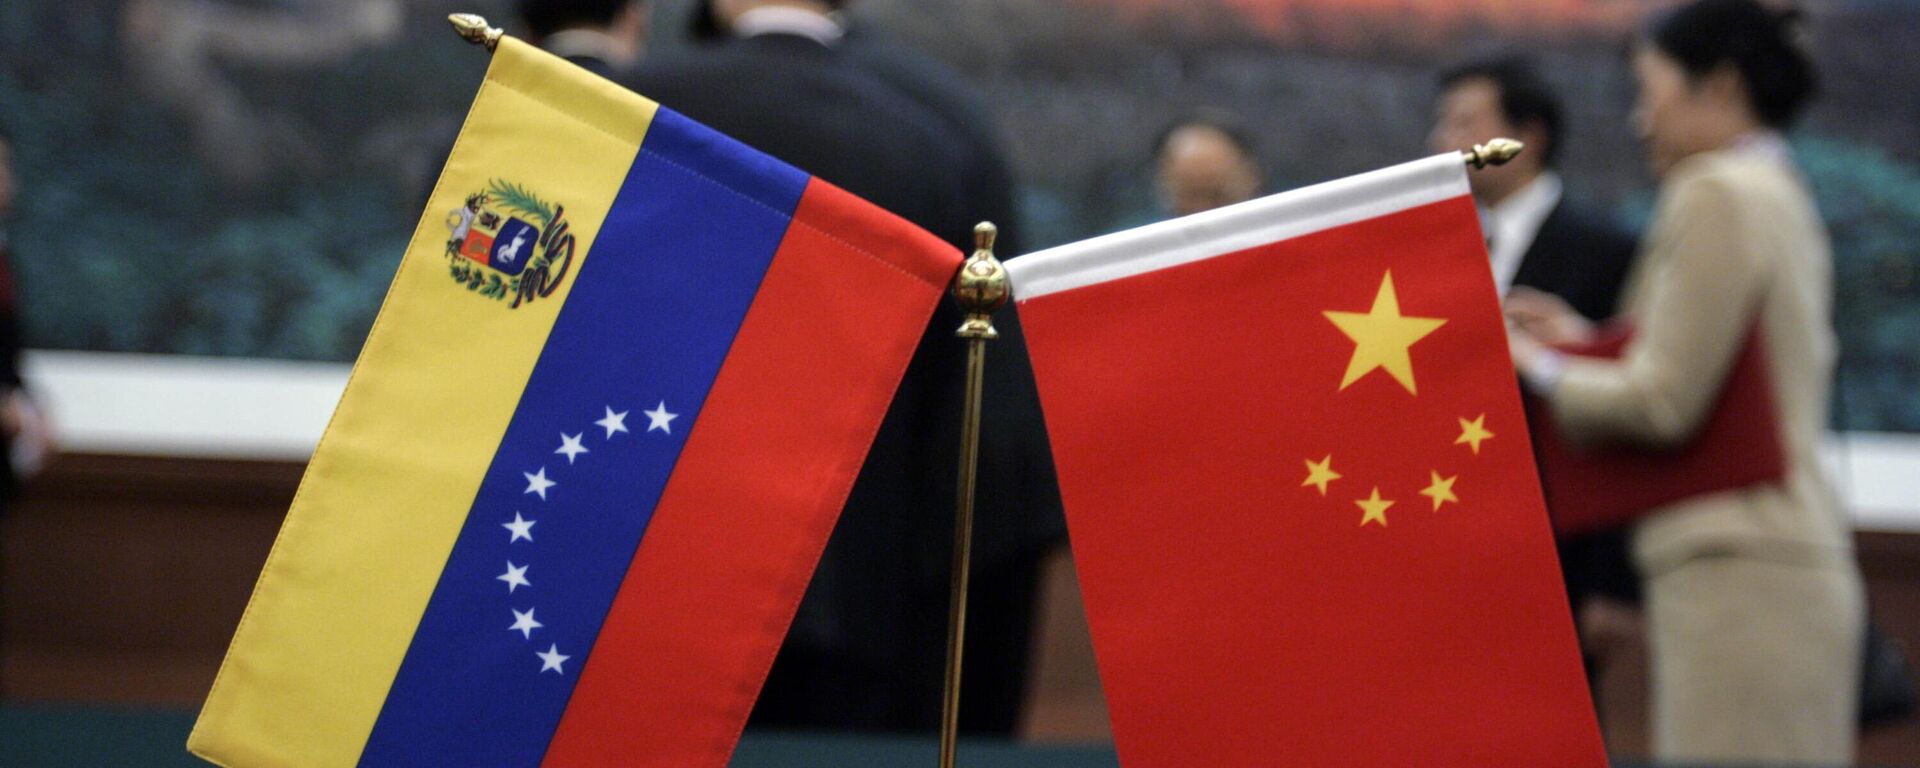 As bandeiras chinesa e venezuelana são colocadas sobre a mesa onde ocorreu a cerimônia de assinatura de acordos entre as duas nações no Grande Salão do Povo em Pequim - Sputnik Brasil, 1920, 25.05.2023